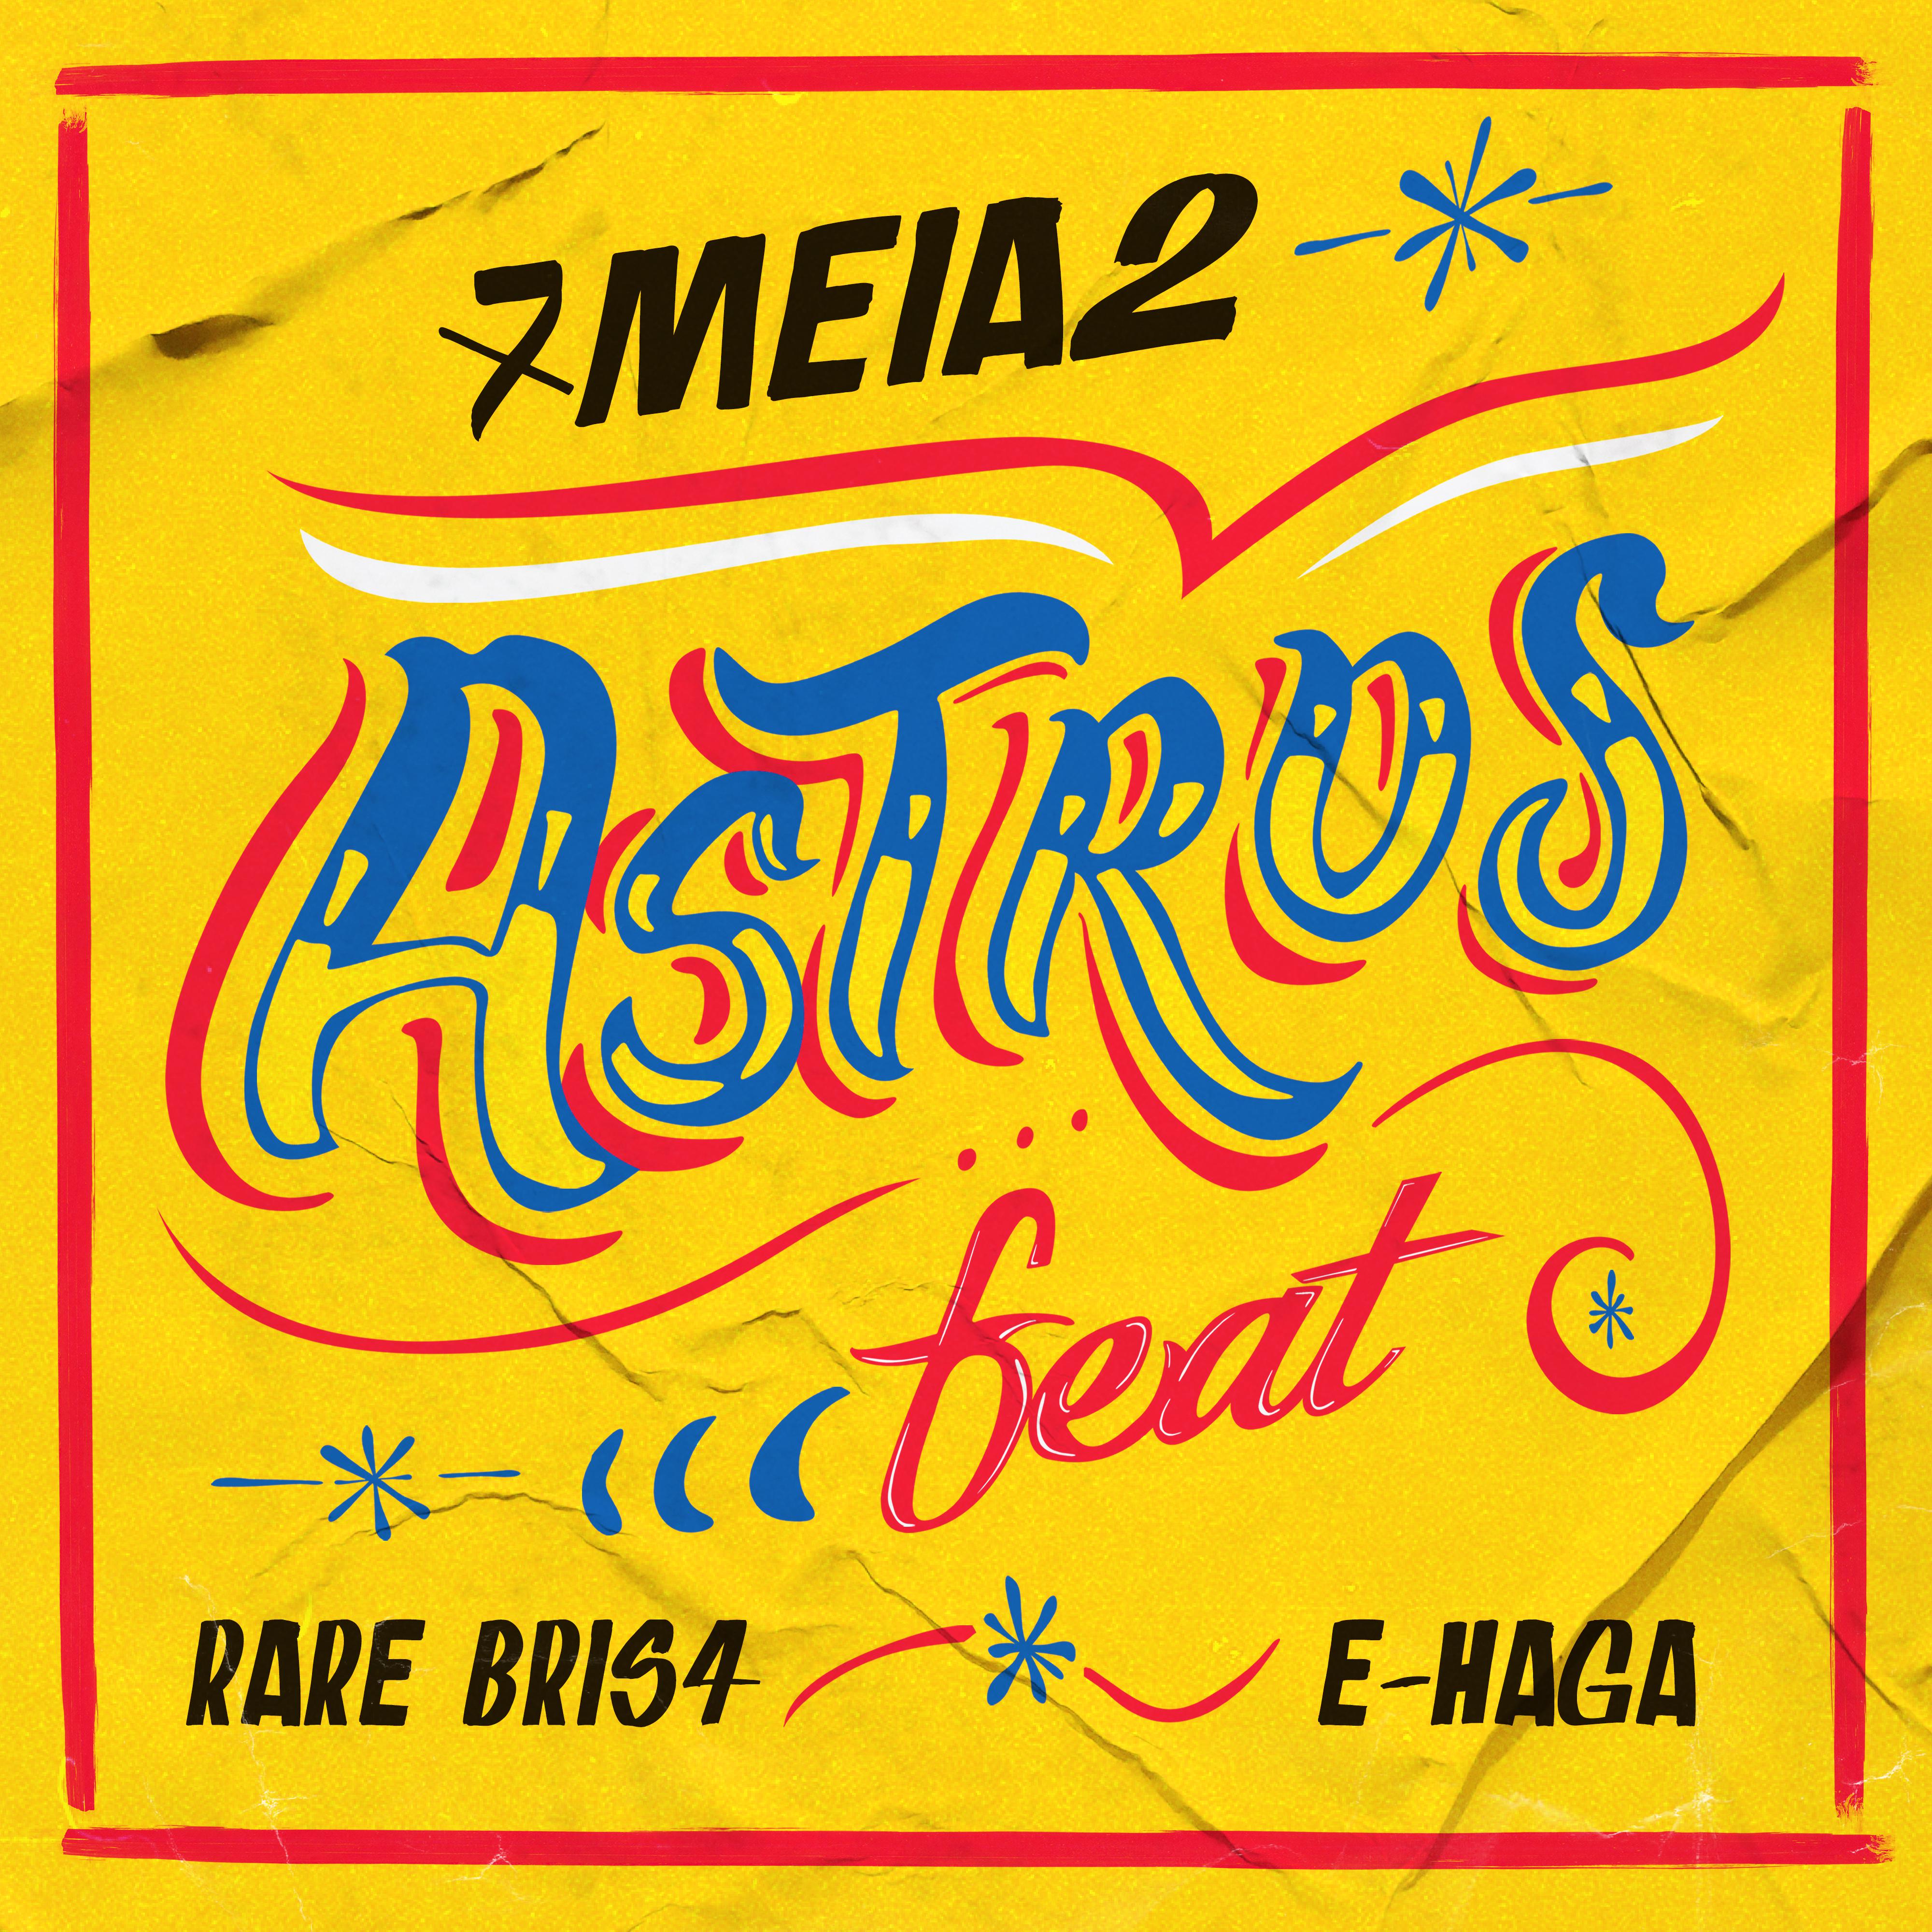 Постер альбома Astros